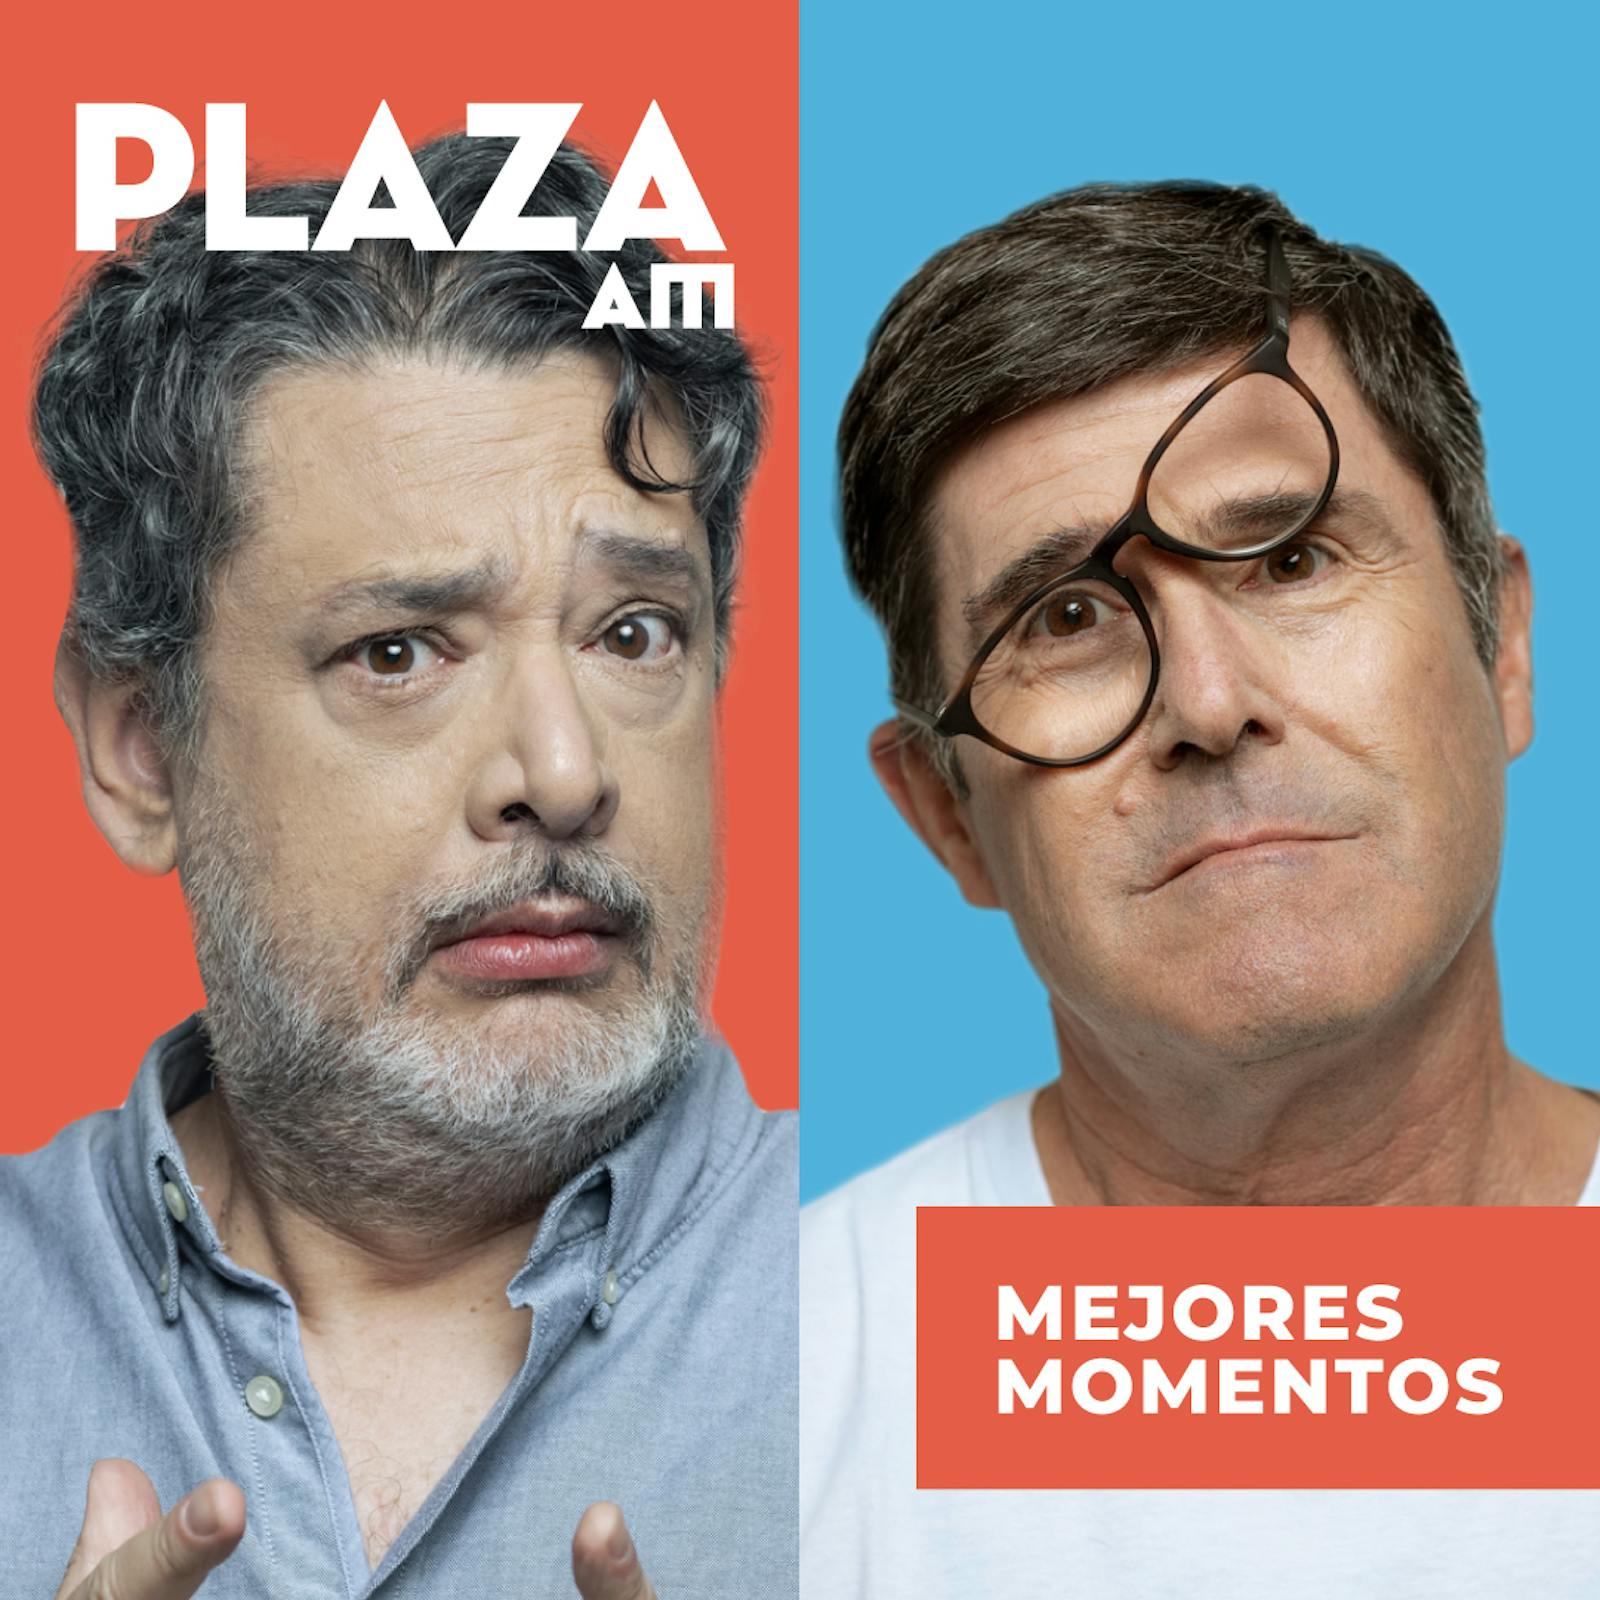 Plaza AM - Mejores Momentos